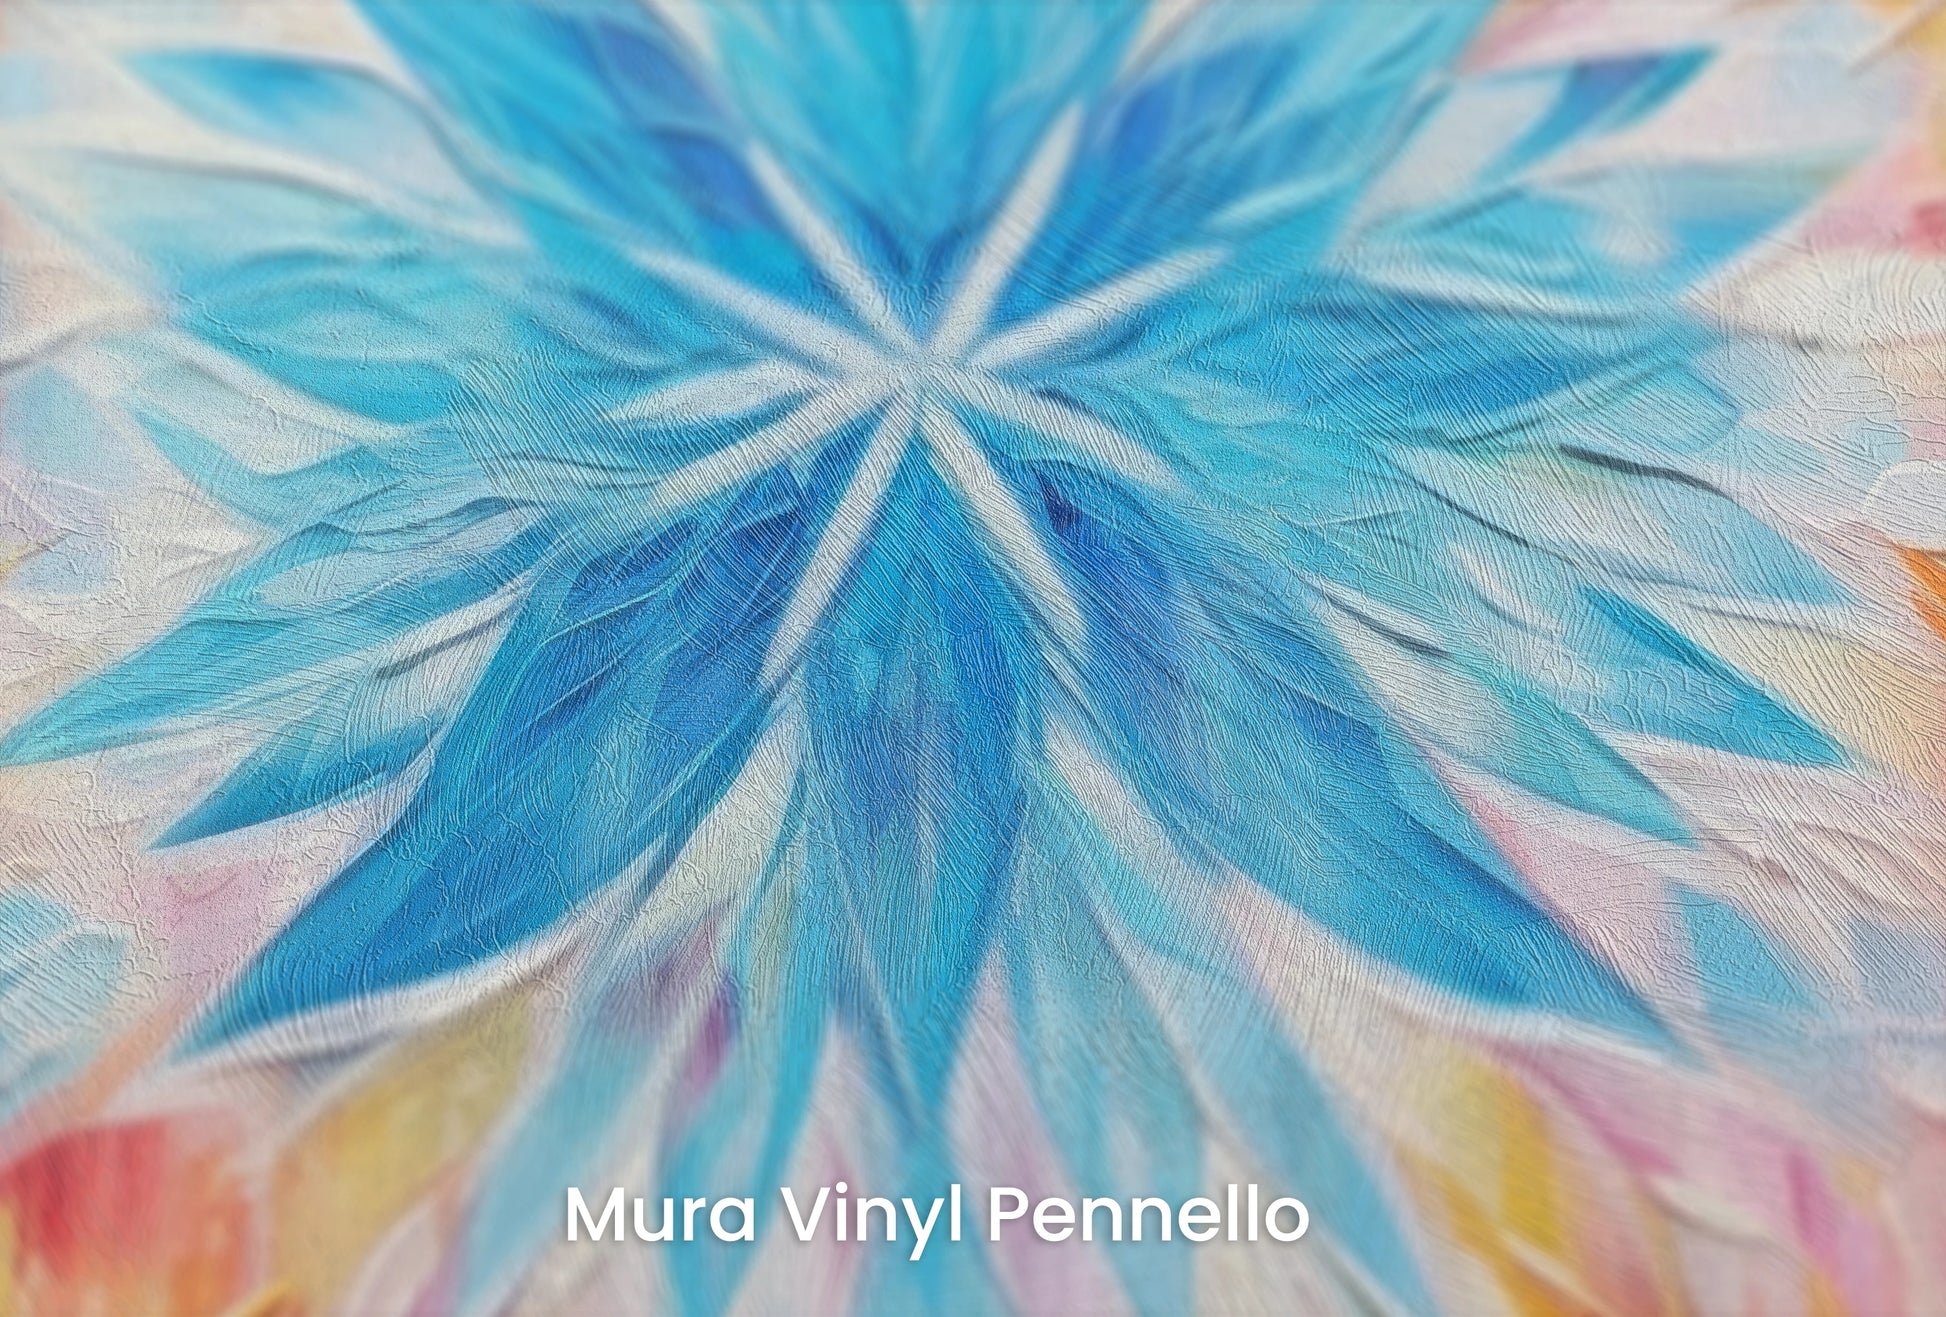 Zbliżenie na artystyczną fototapetę o nazwie Fire and Ice na podłożu Mura Vinyl Pennello - faktura pociągnięć pędzla malarskiego.